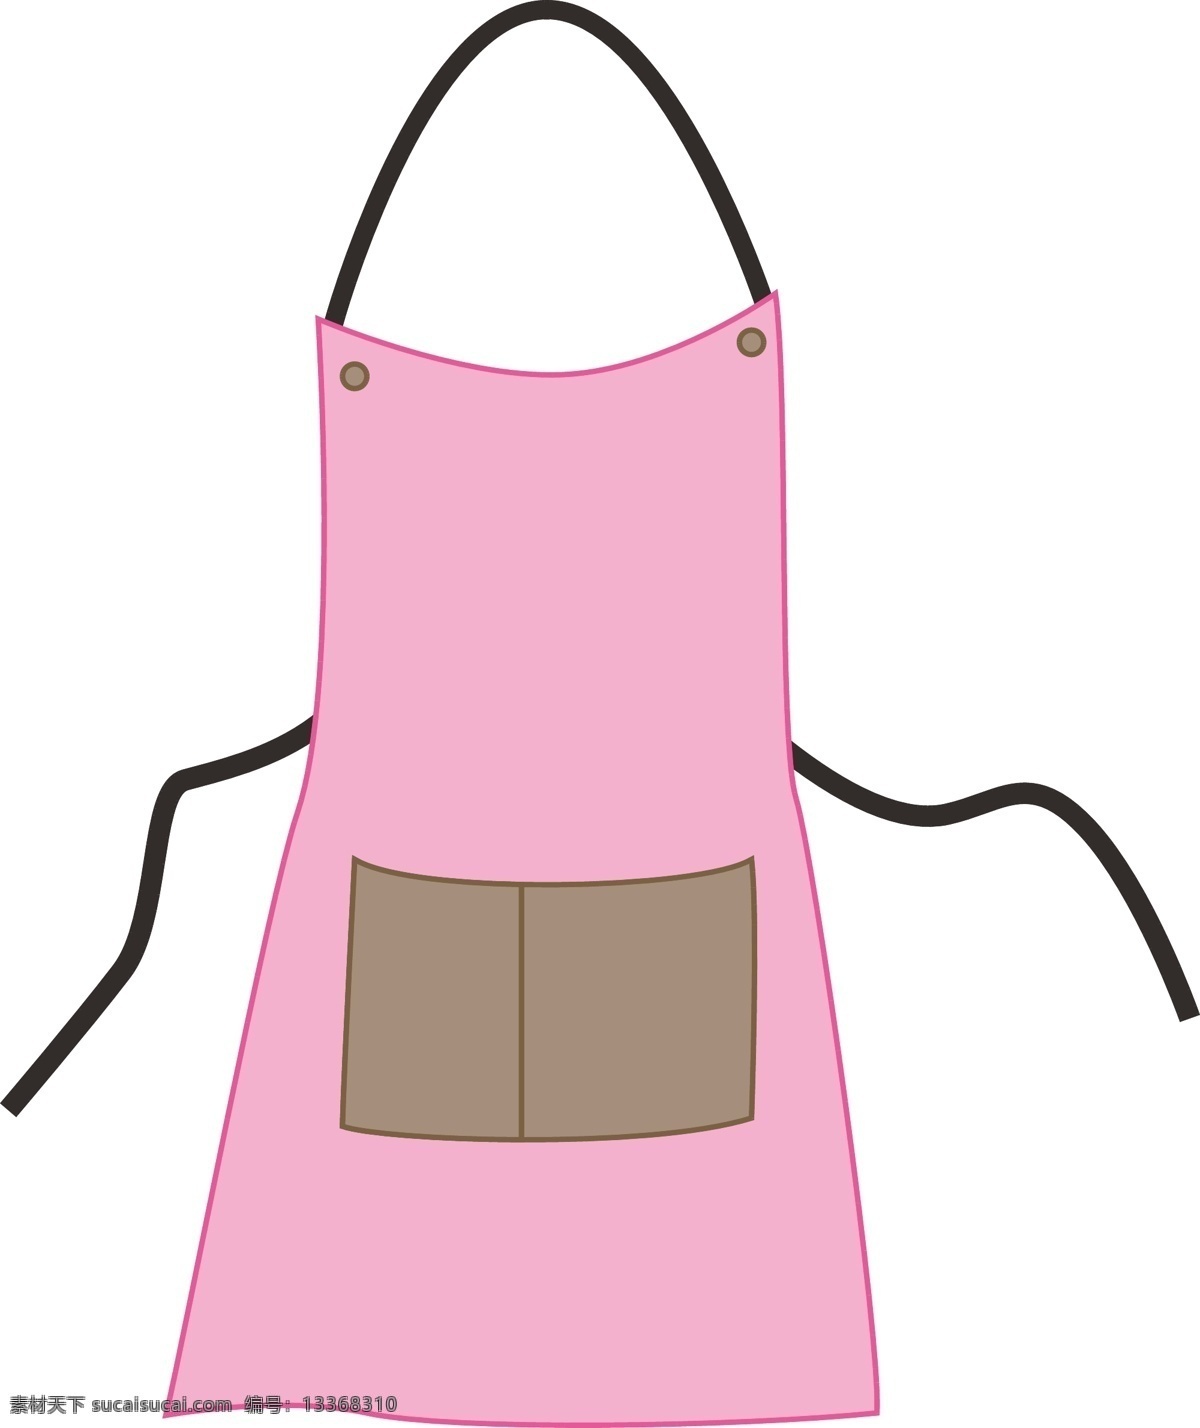 大人围裙 围裙 粉色 厨房 日用 可爱